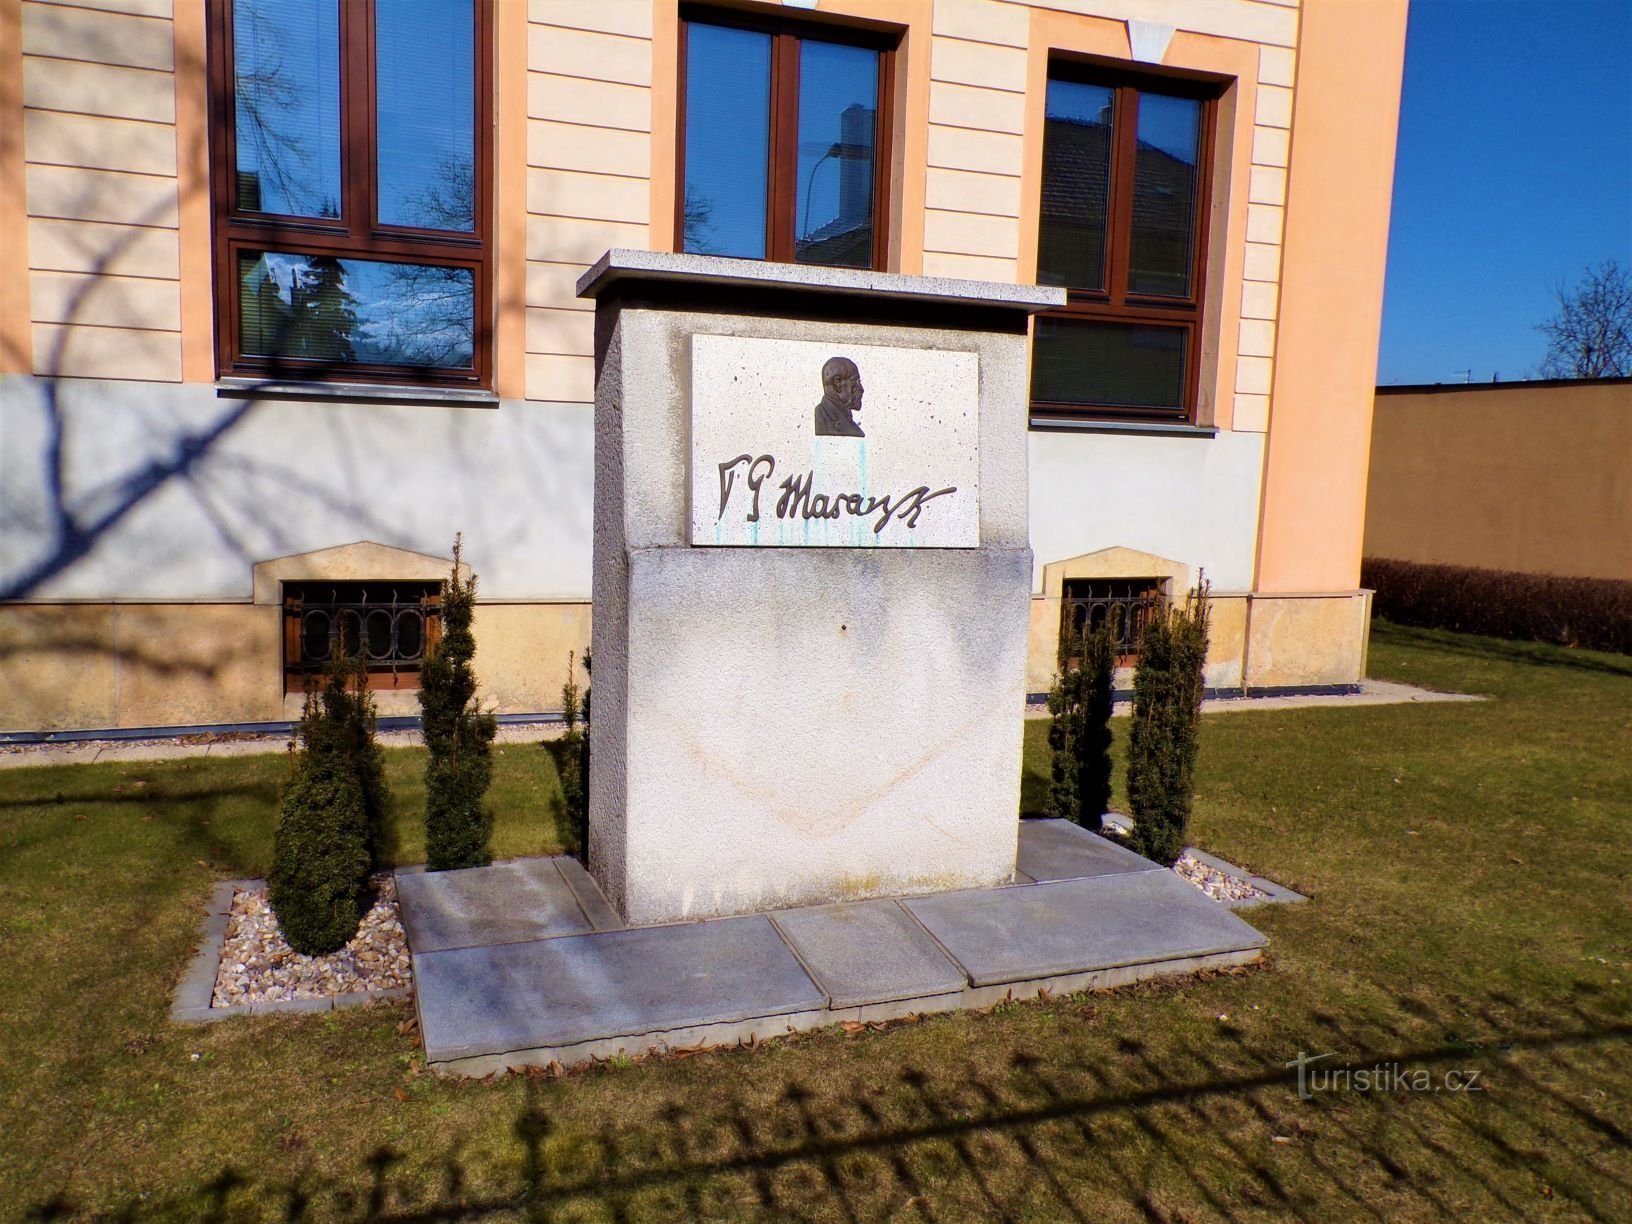 Памятник национального освобождения в Мальшовицах (Градец Кралове, 6.3.2021 марта XNUMX г.)